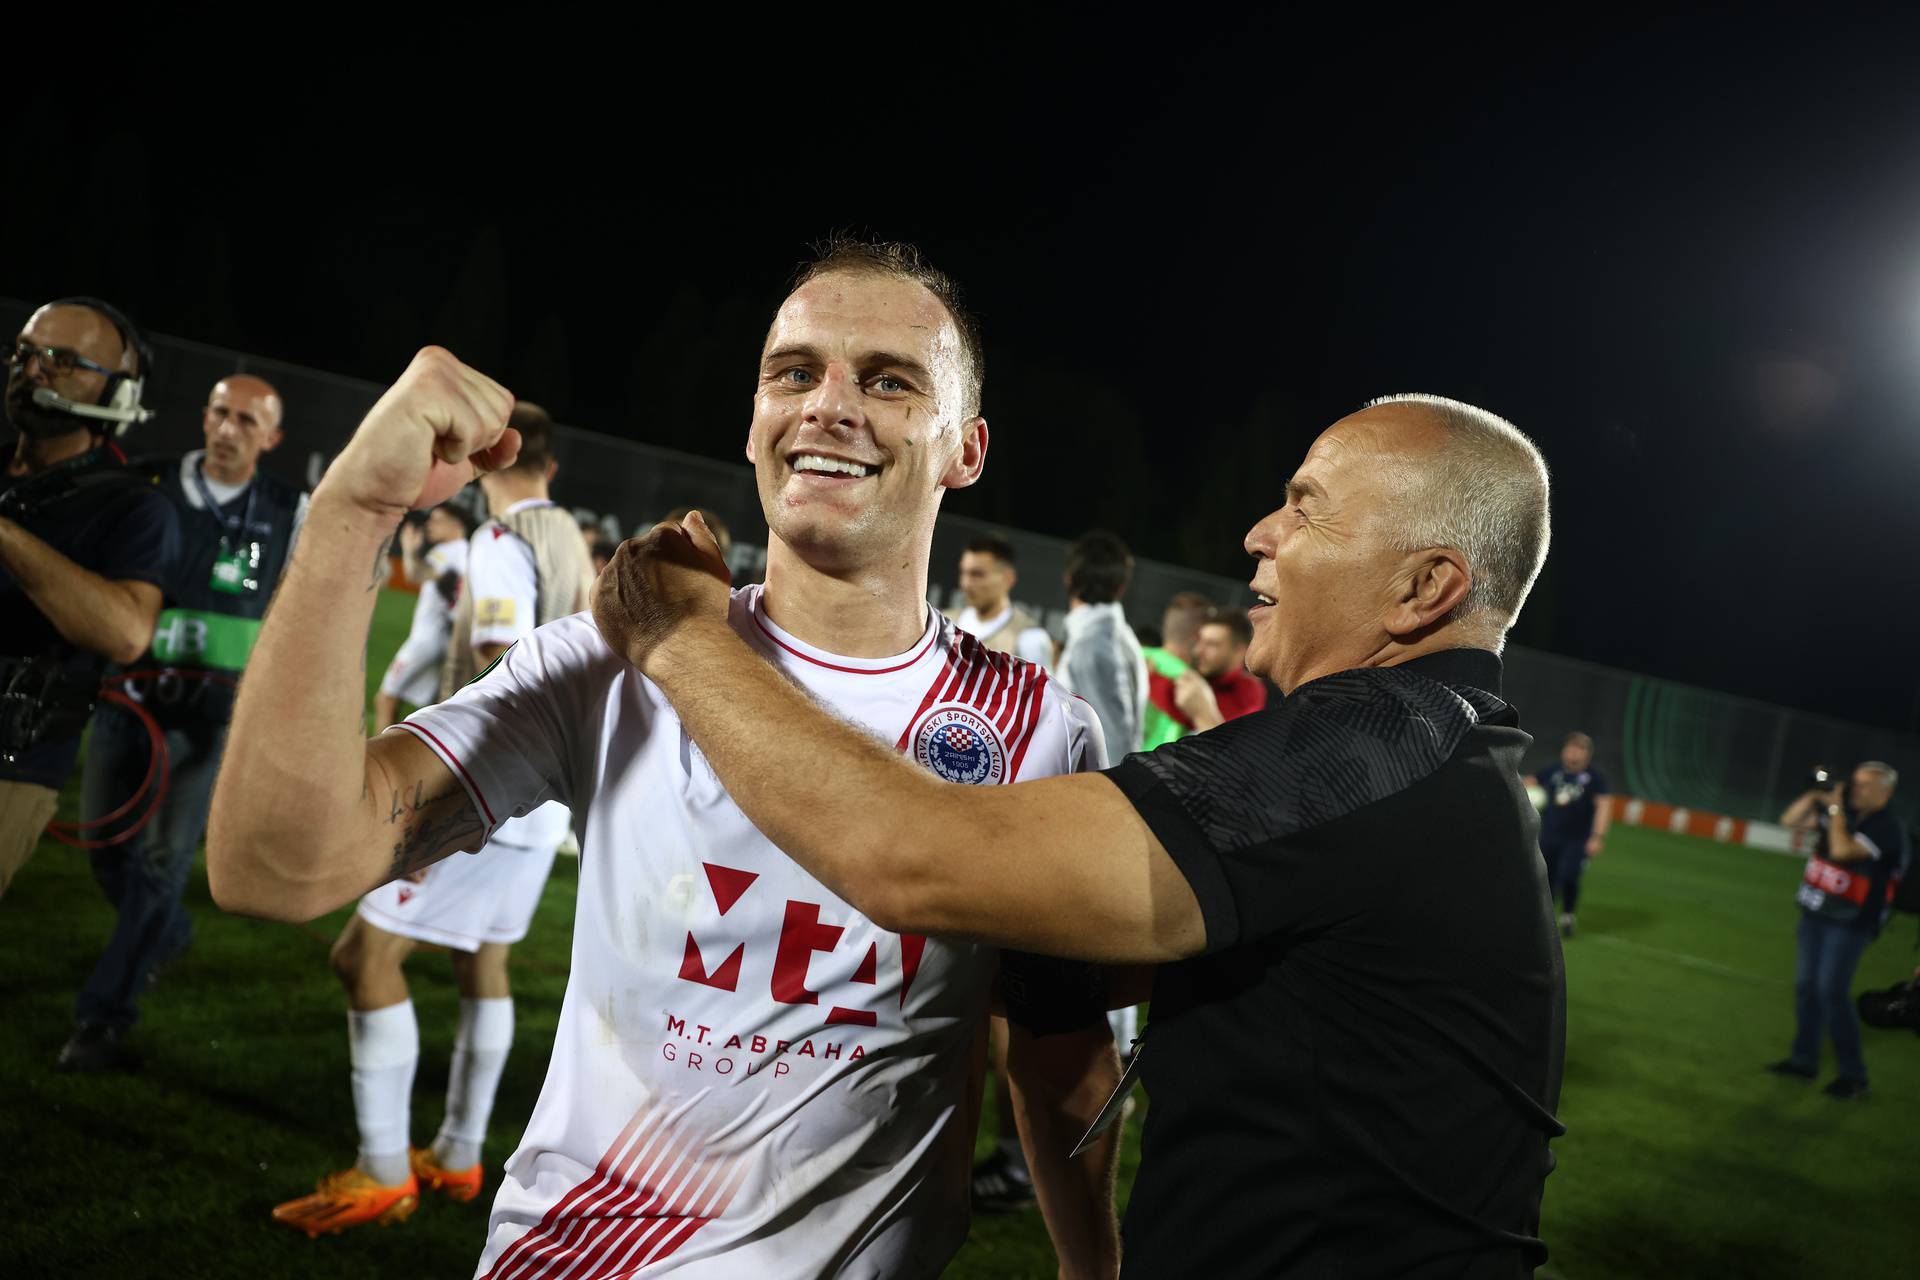 Mostar: Slavlje igrača Zrinjskog nakon čudesne pobjede protiv AZ Alkmaara u Konferencijskoj ligi